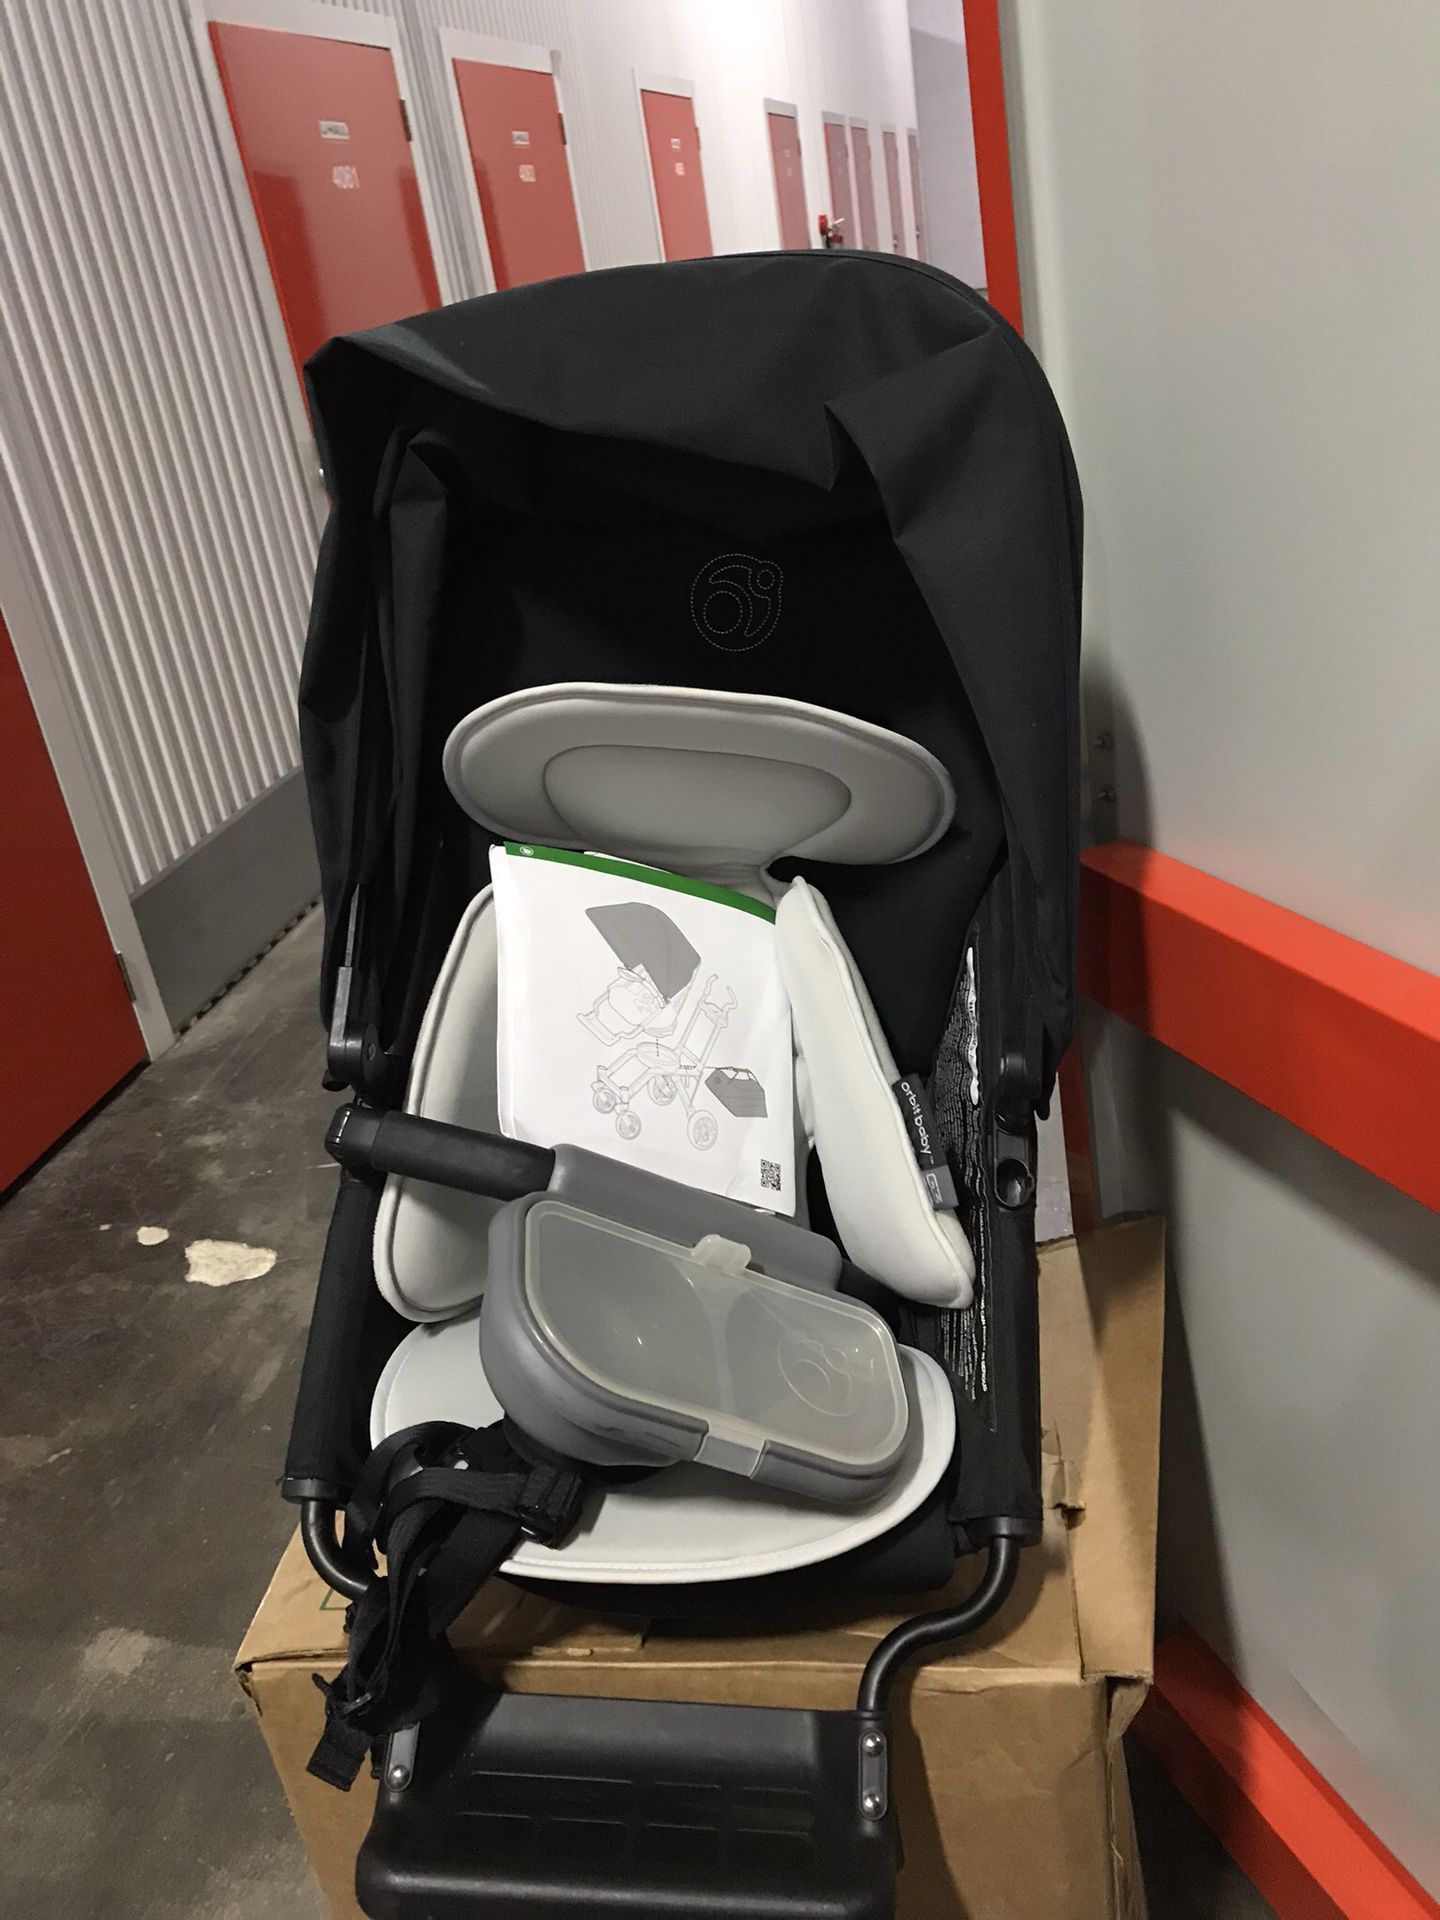 Orbit Baby stroller